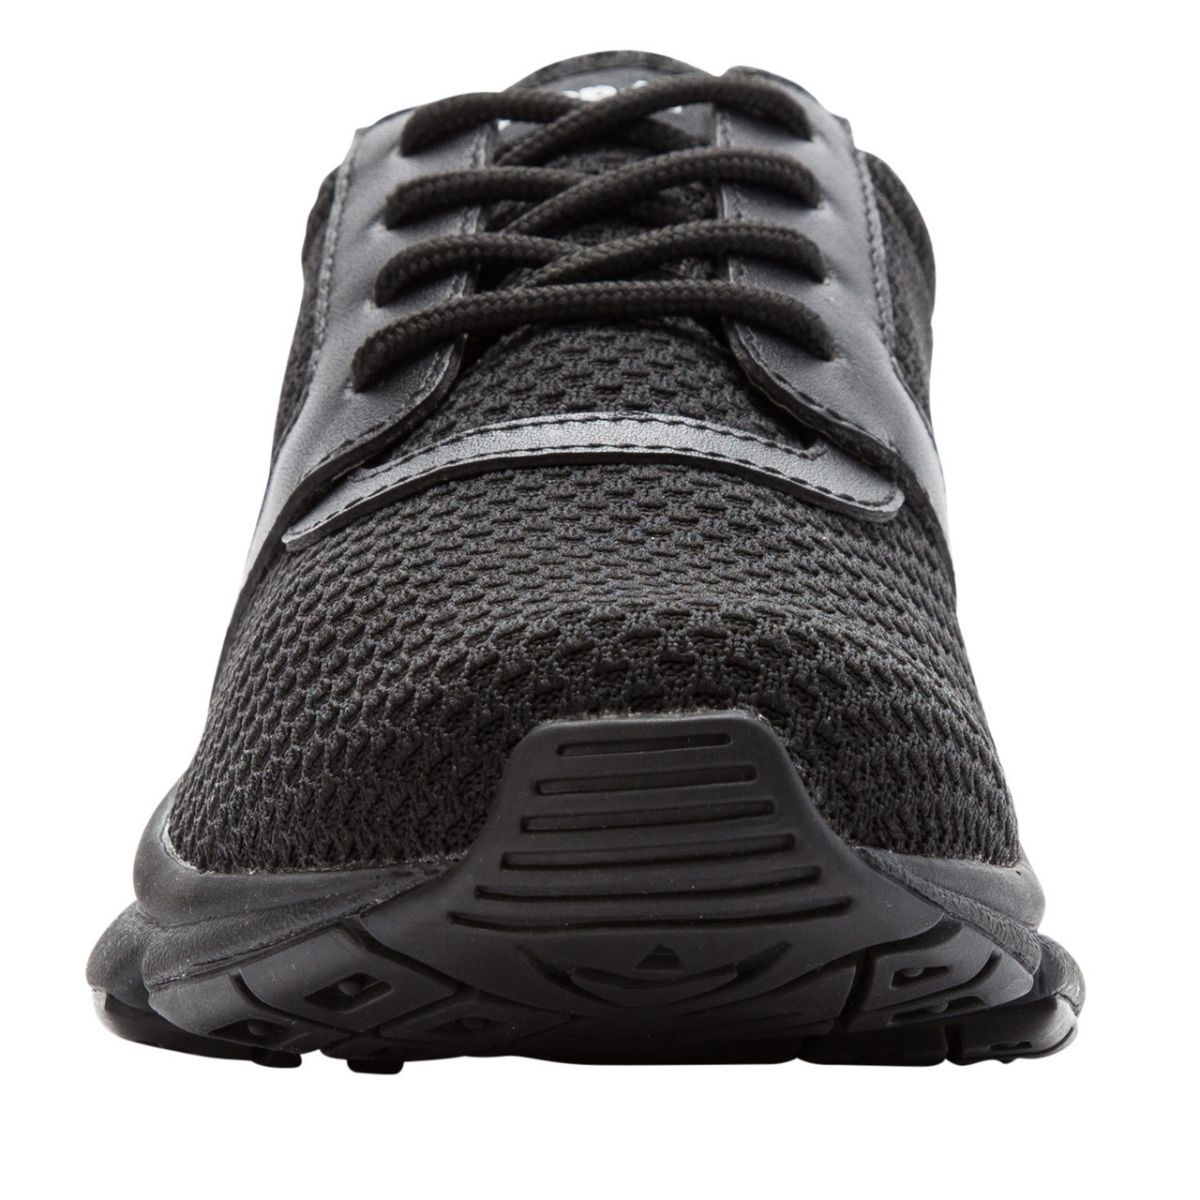 Propet Women's Stability X Walking Shoe Black - WAA032MBLK BLACK - BLACK, 10.5 Wide